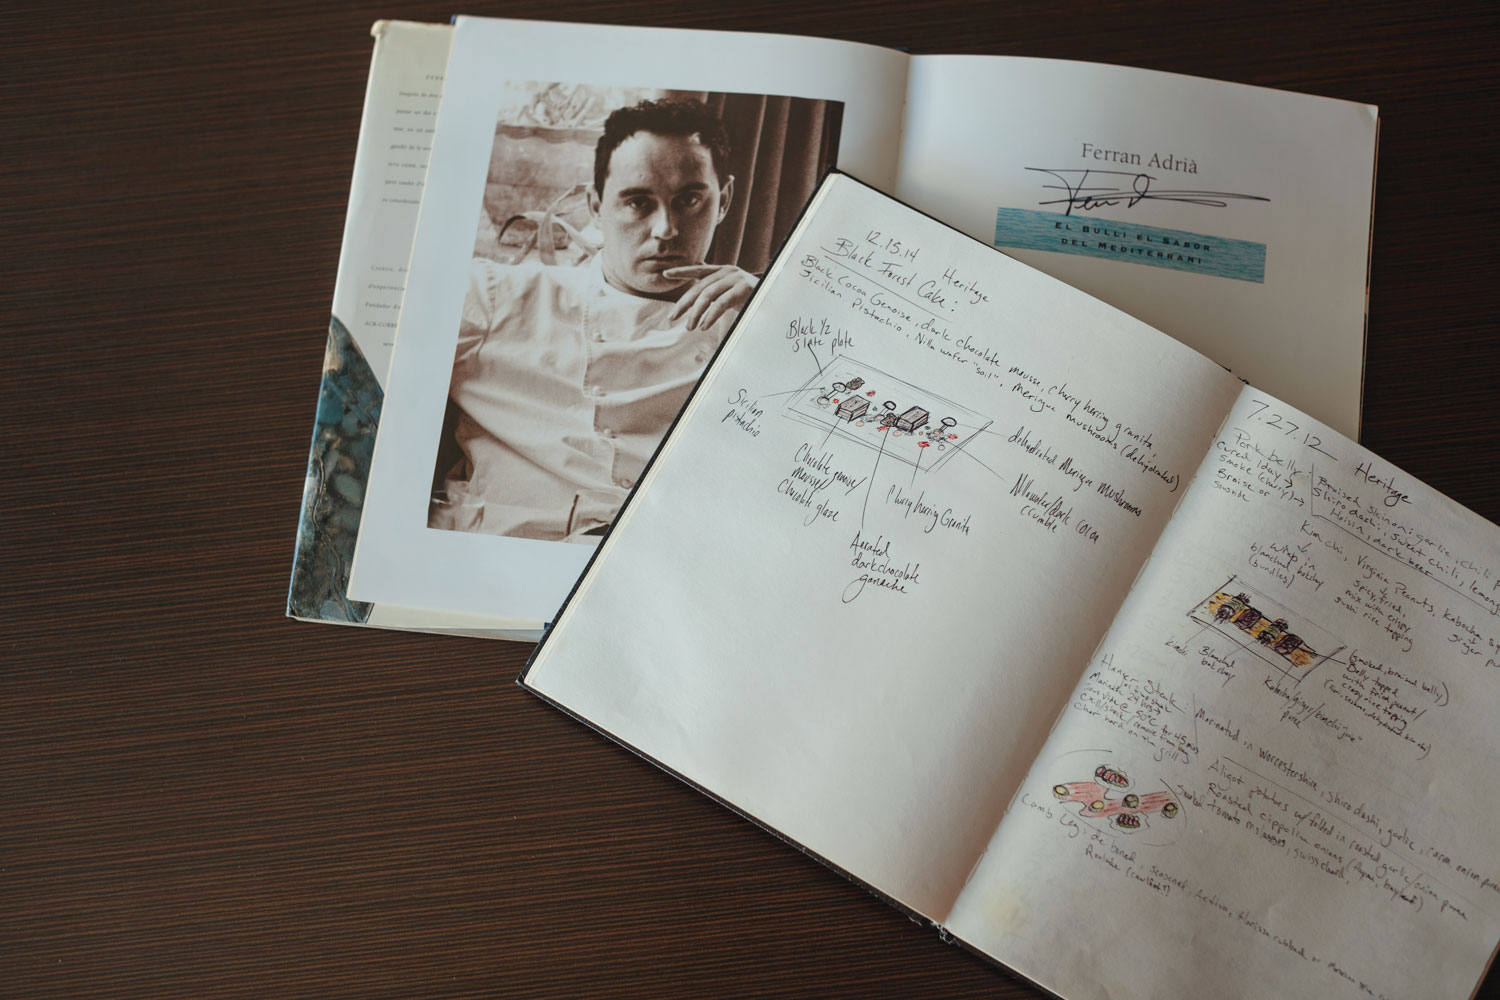 Ferran Adrià book and Joe Sparatta notebook